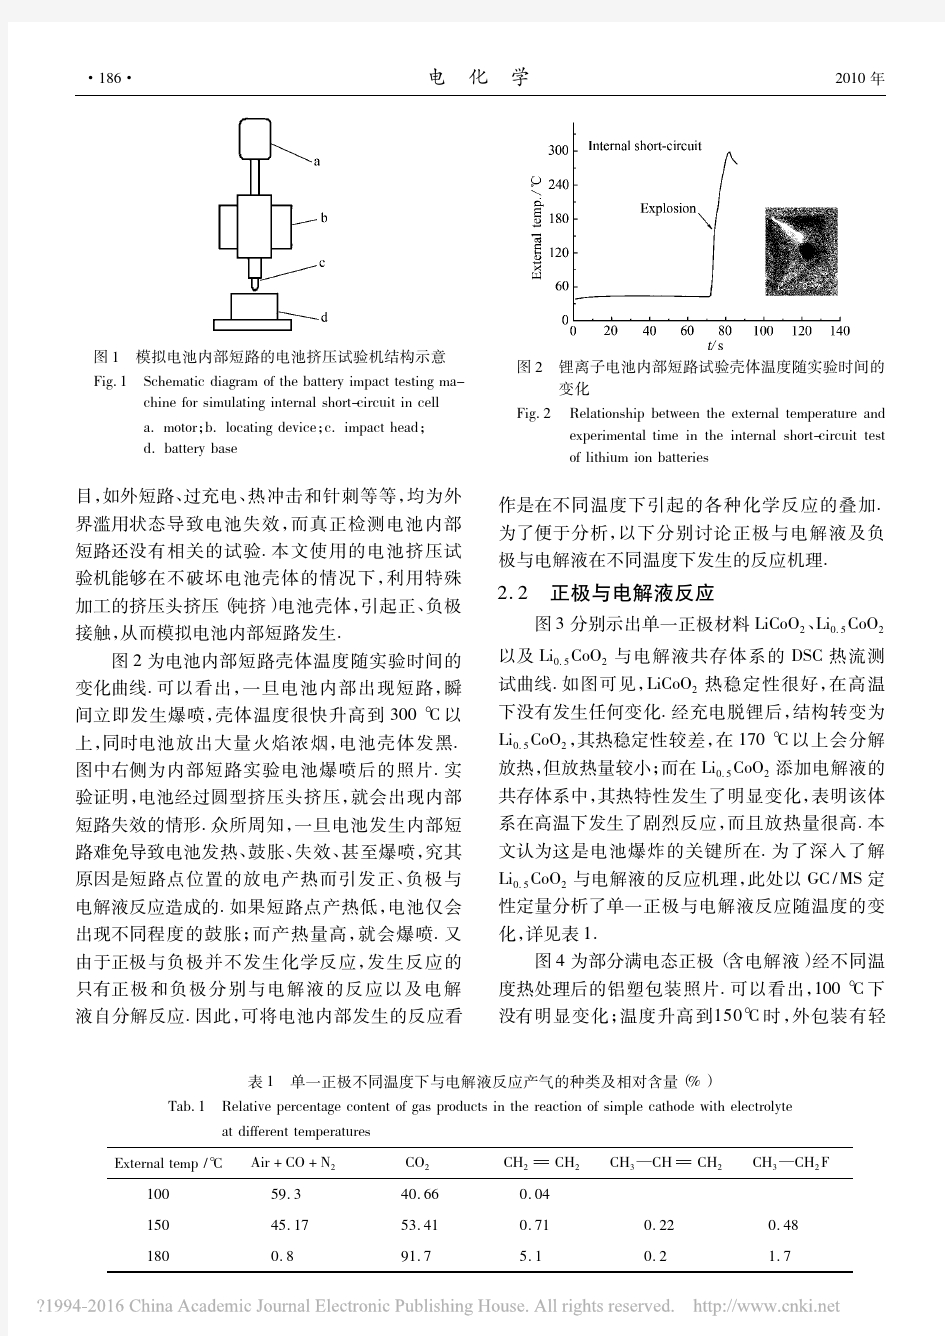 锂离子电池内部短路失效的反应机理研究_李贺